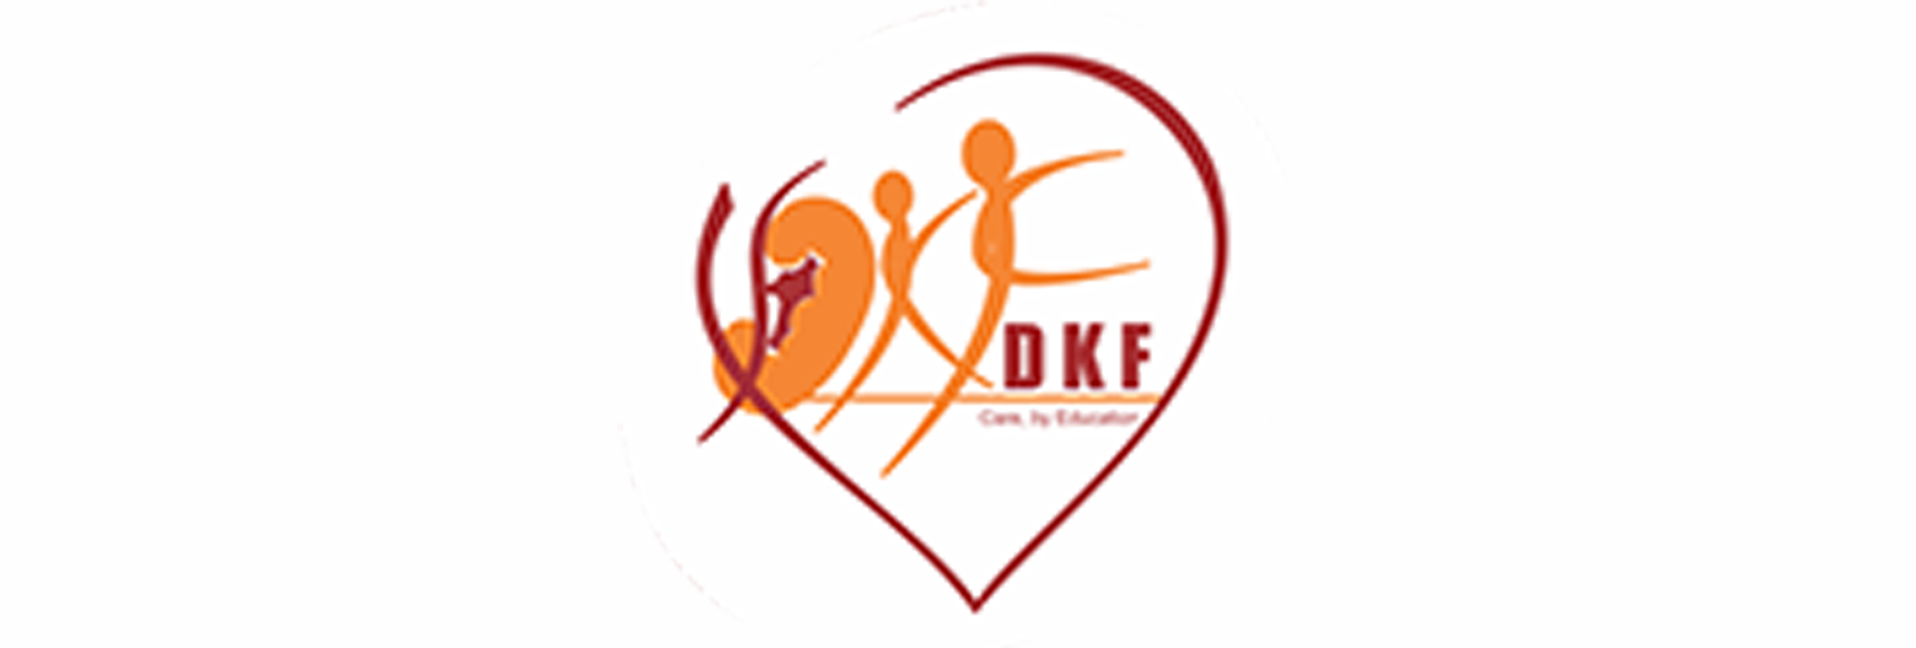 dkf-logo